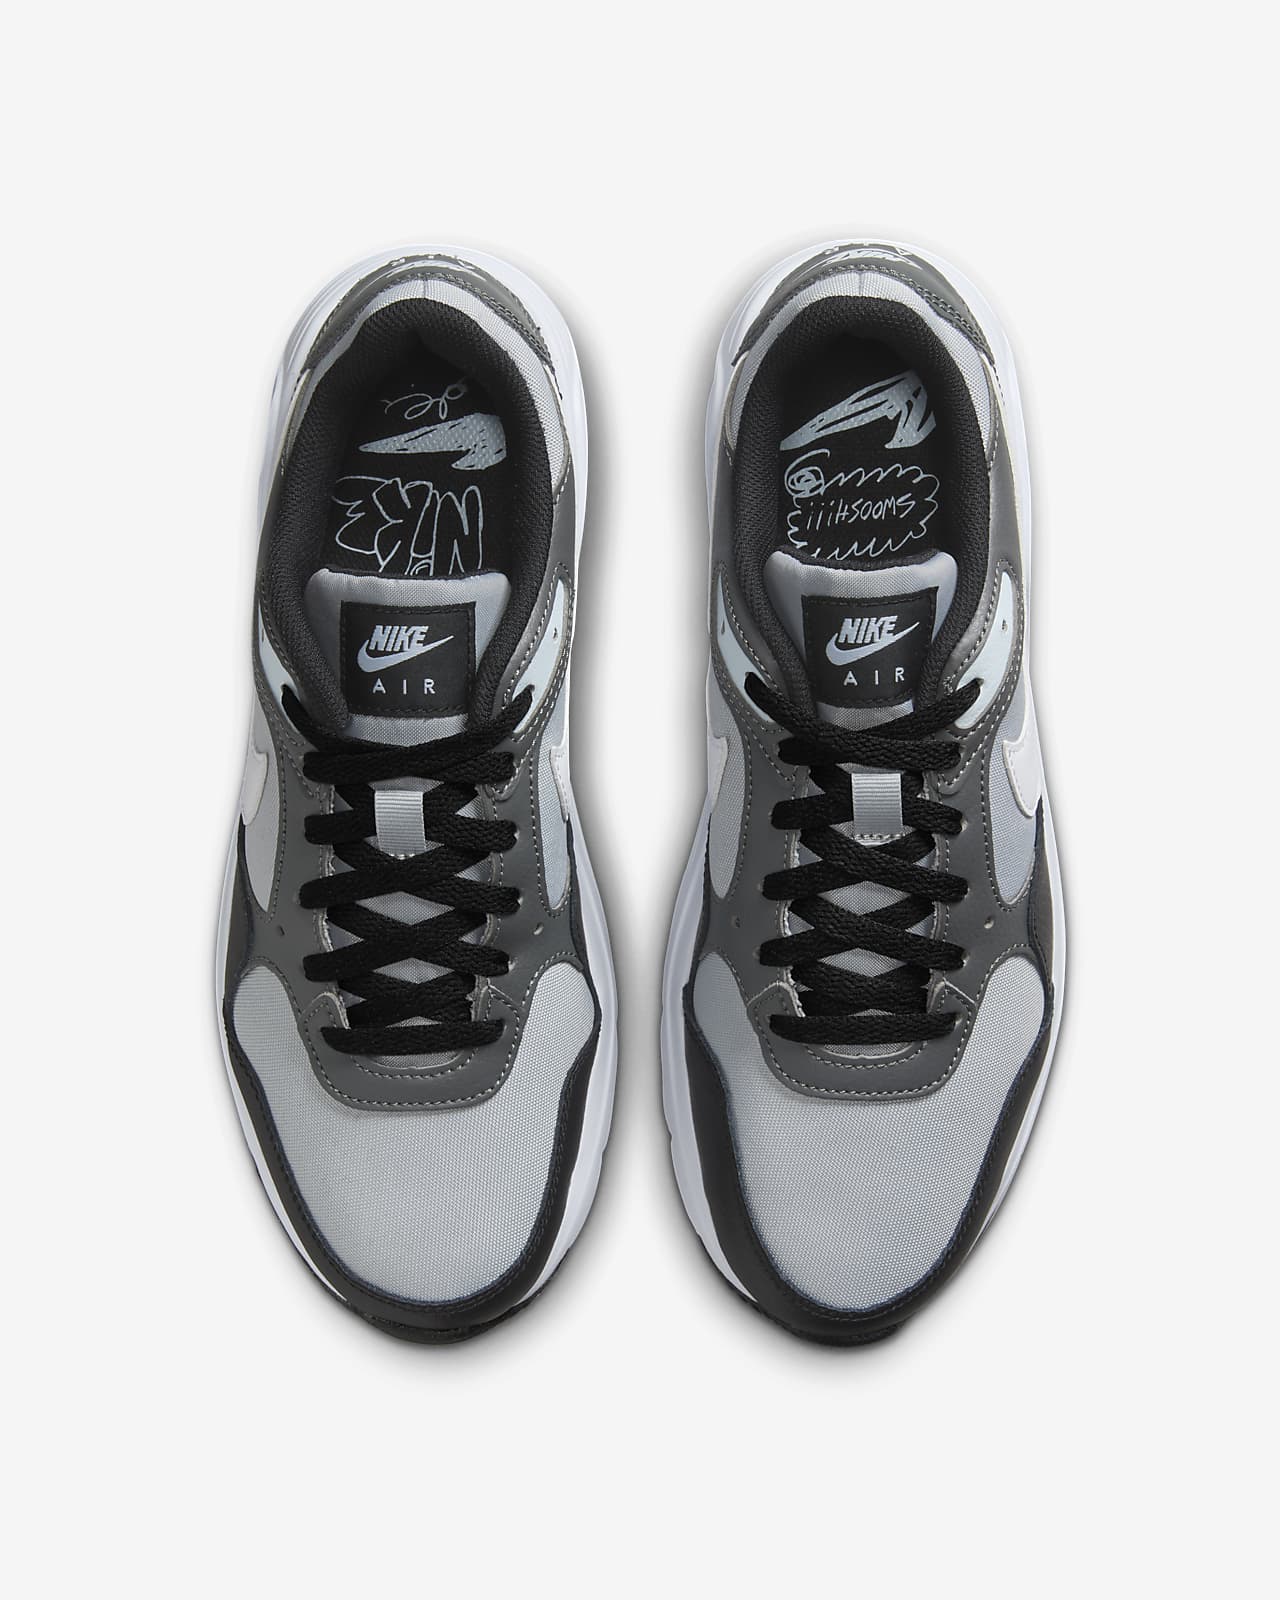 Men\'s Nike Air SC Shoes. Max